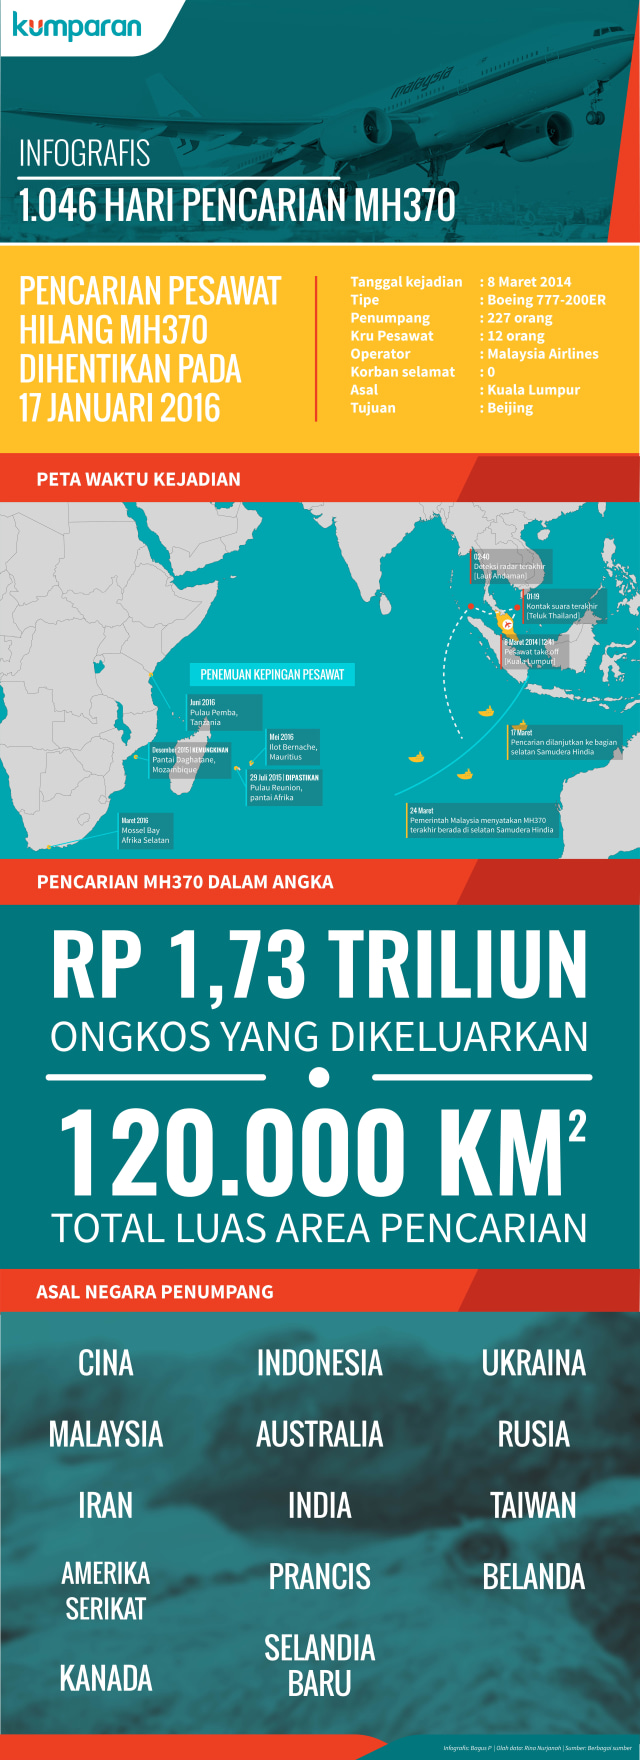 Infografis Pencarian MH370 (Foto: Bagus Permadi/kumparan)